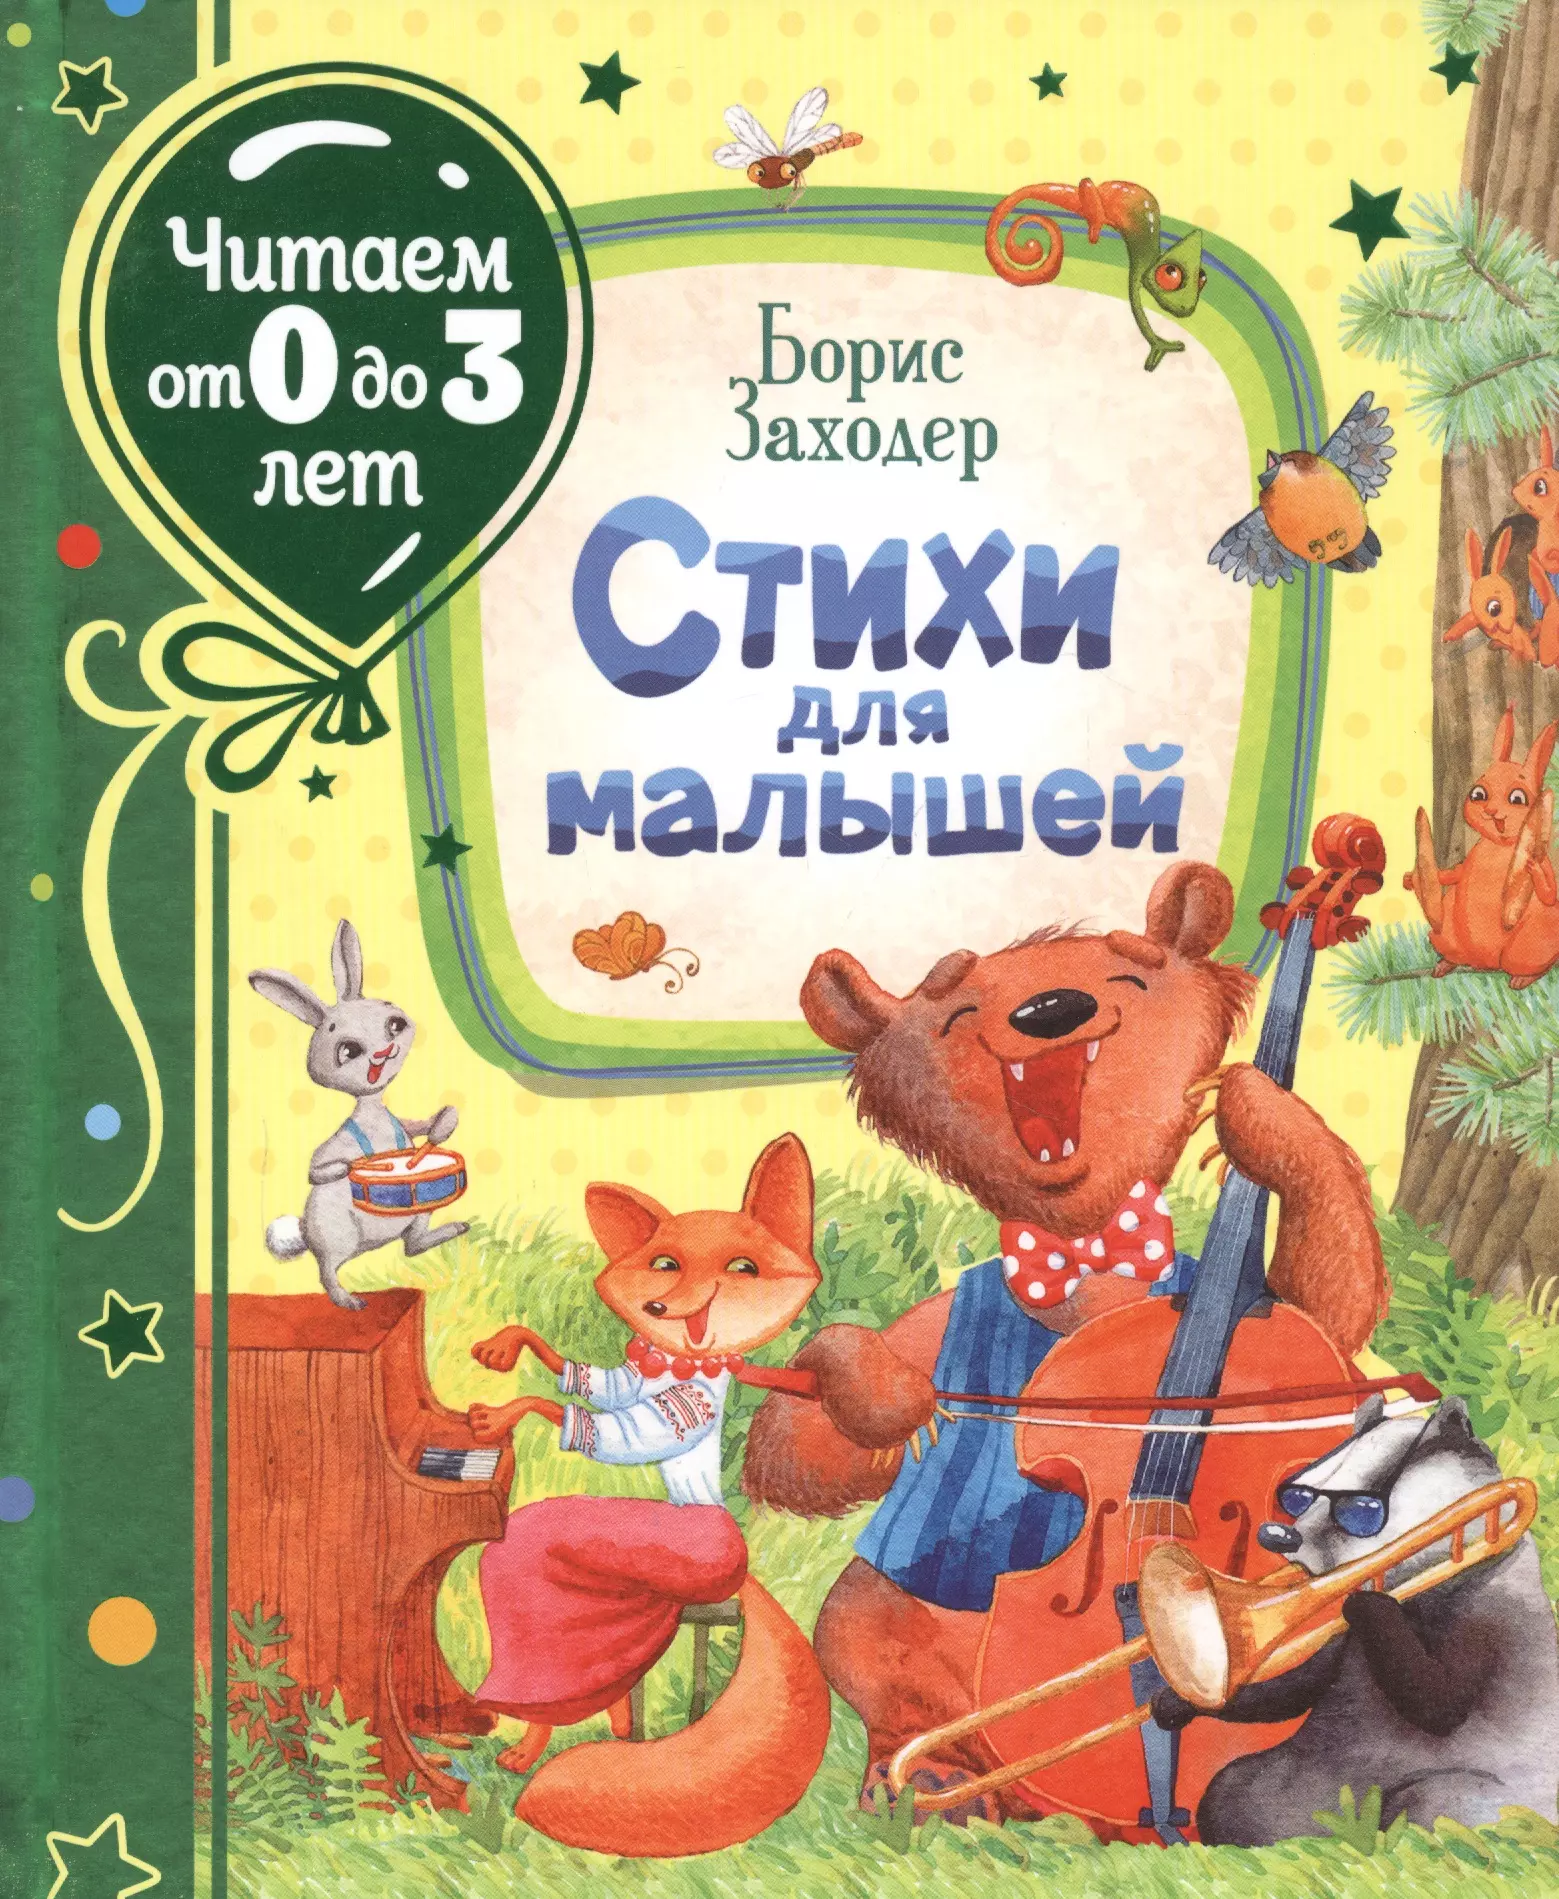 Заходер Борис Владимирович - Стихи для малышей